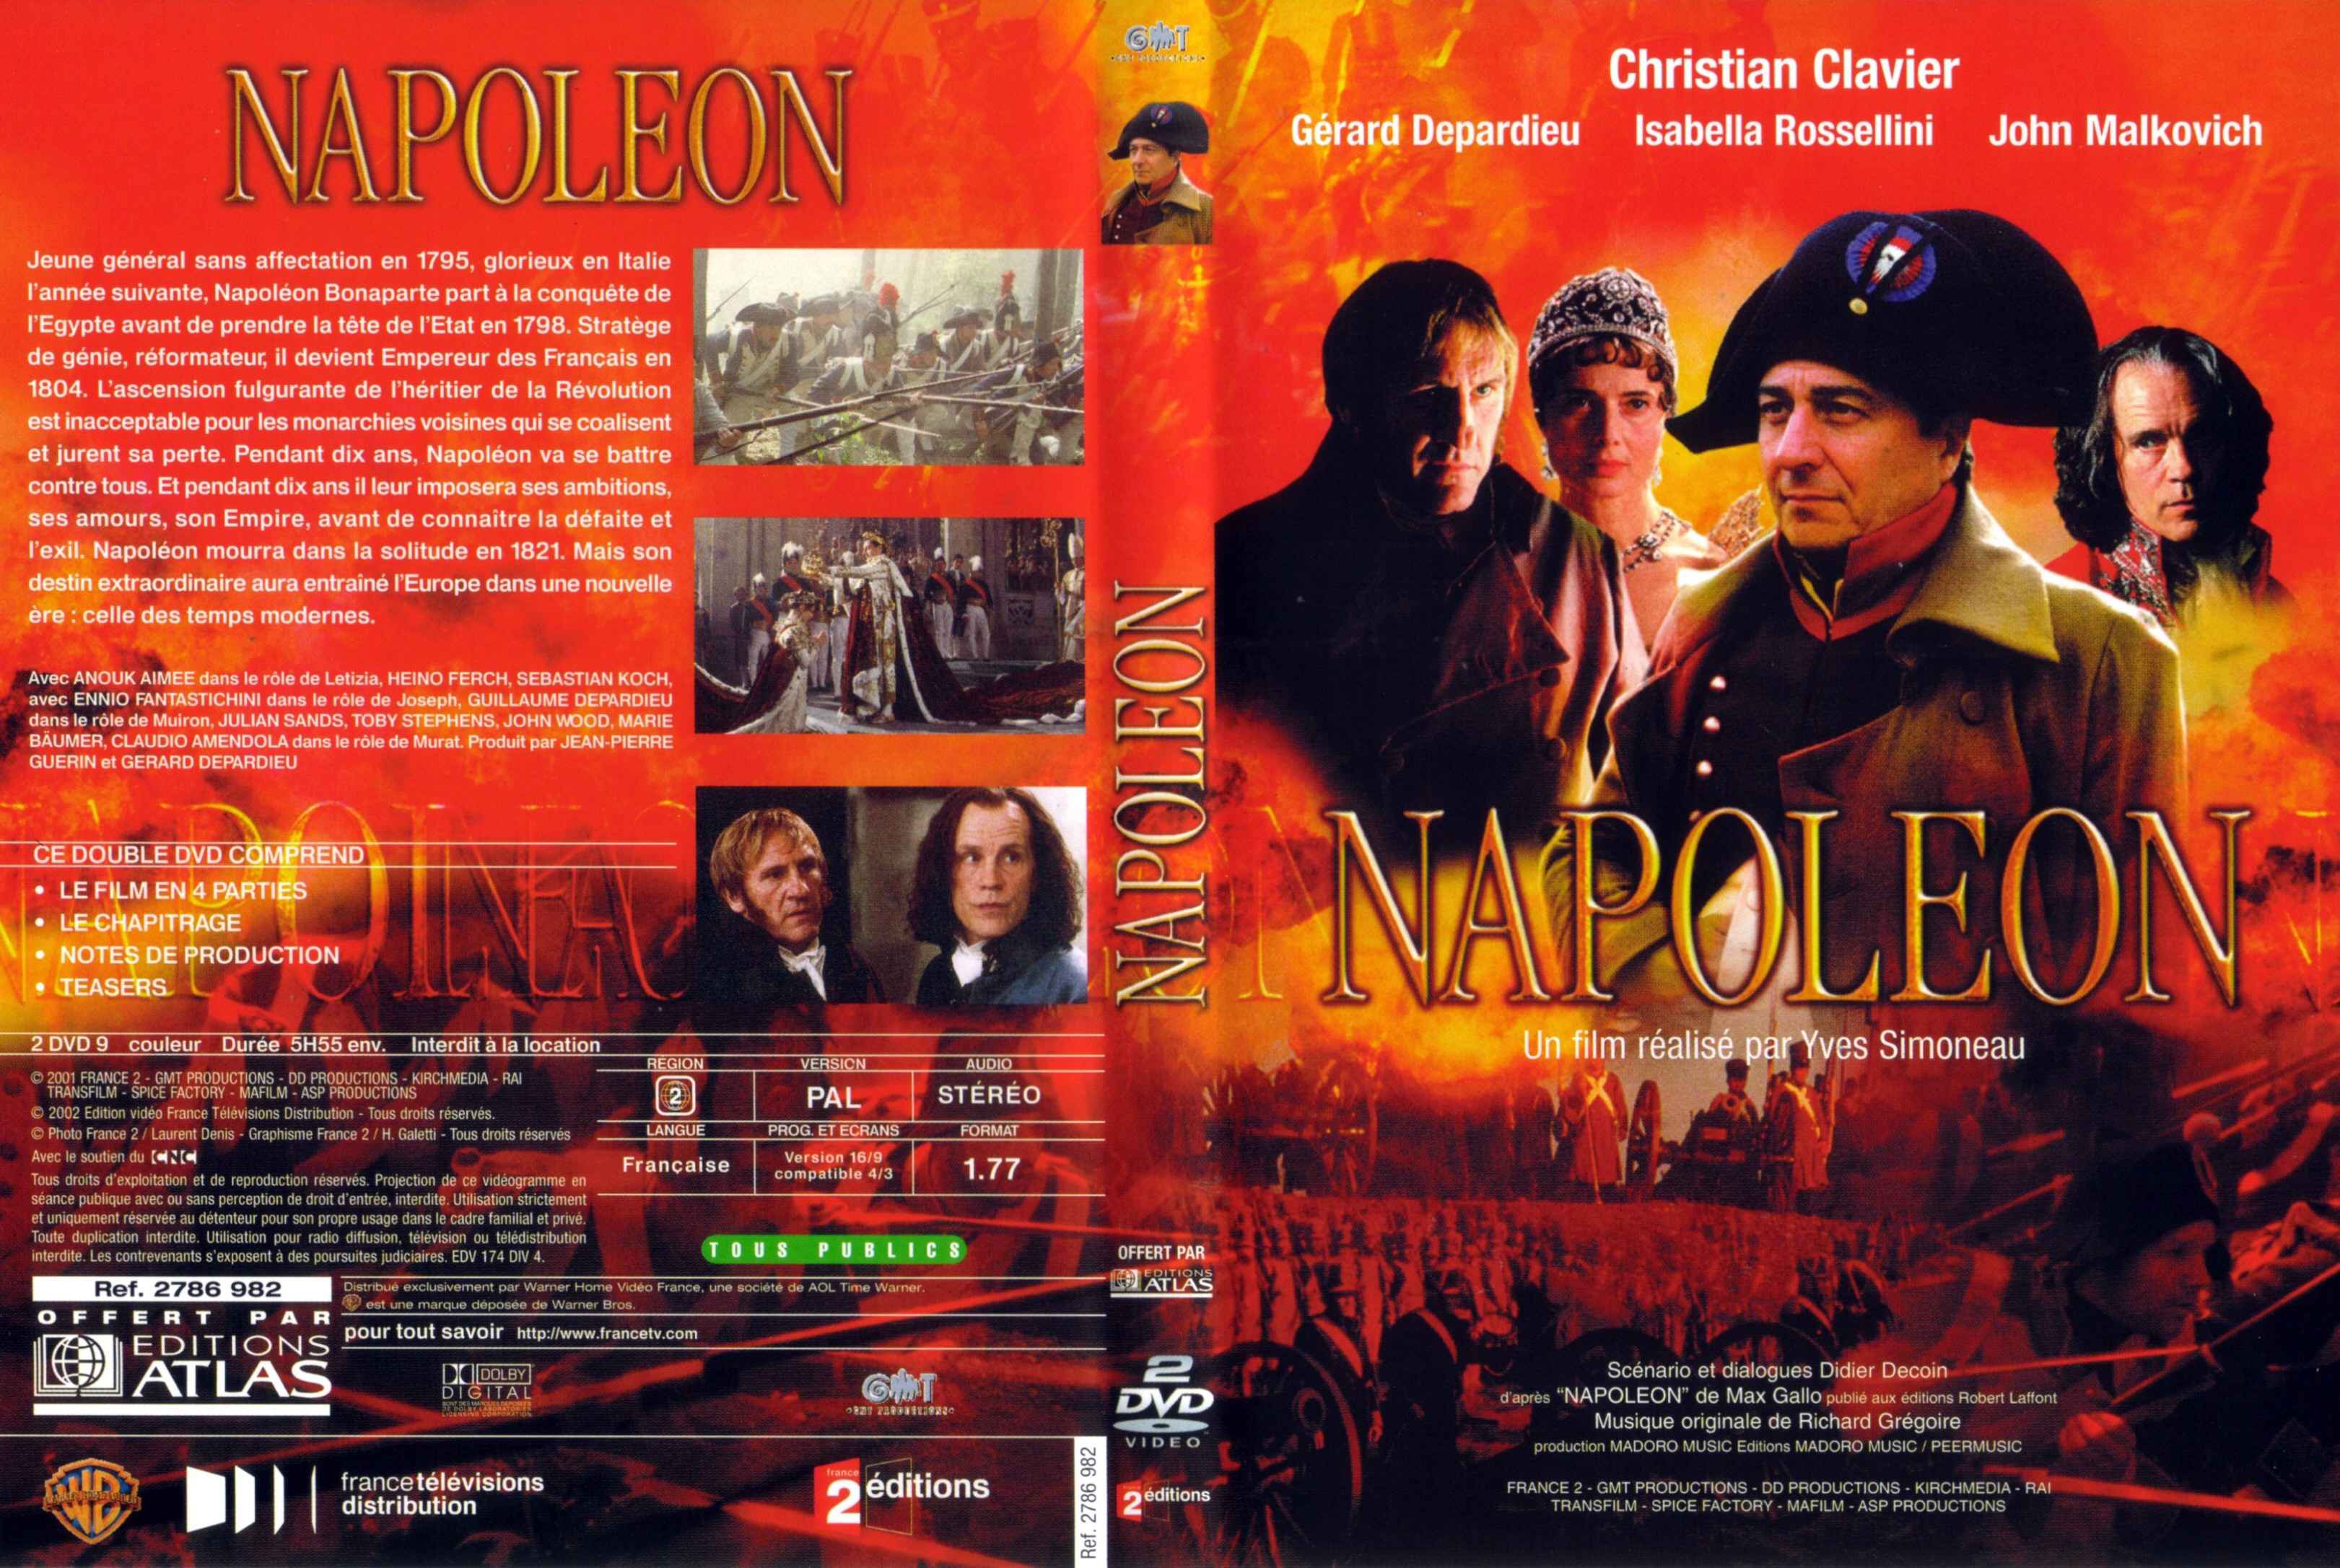 Jaquette DVD Napolon srie tv